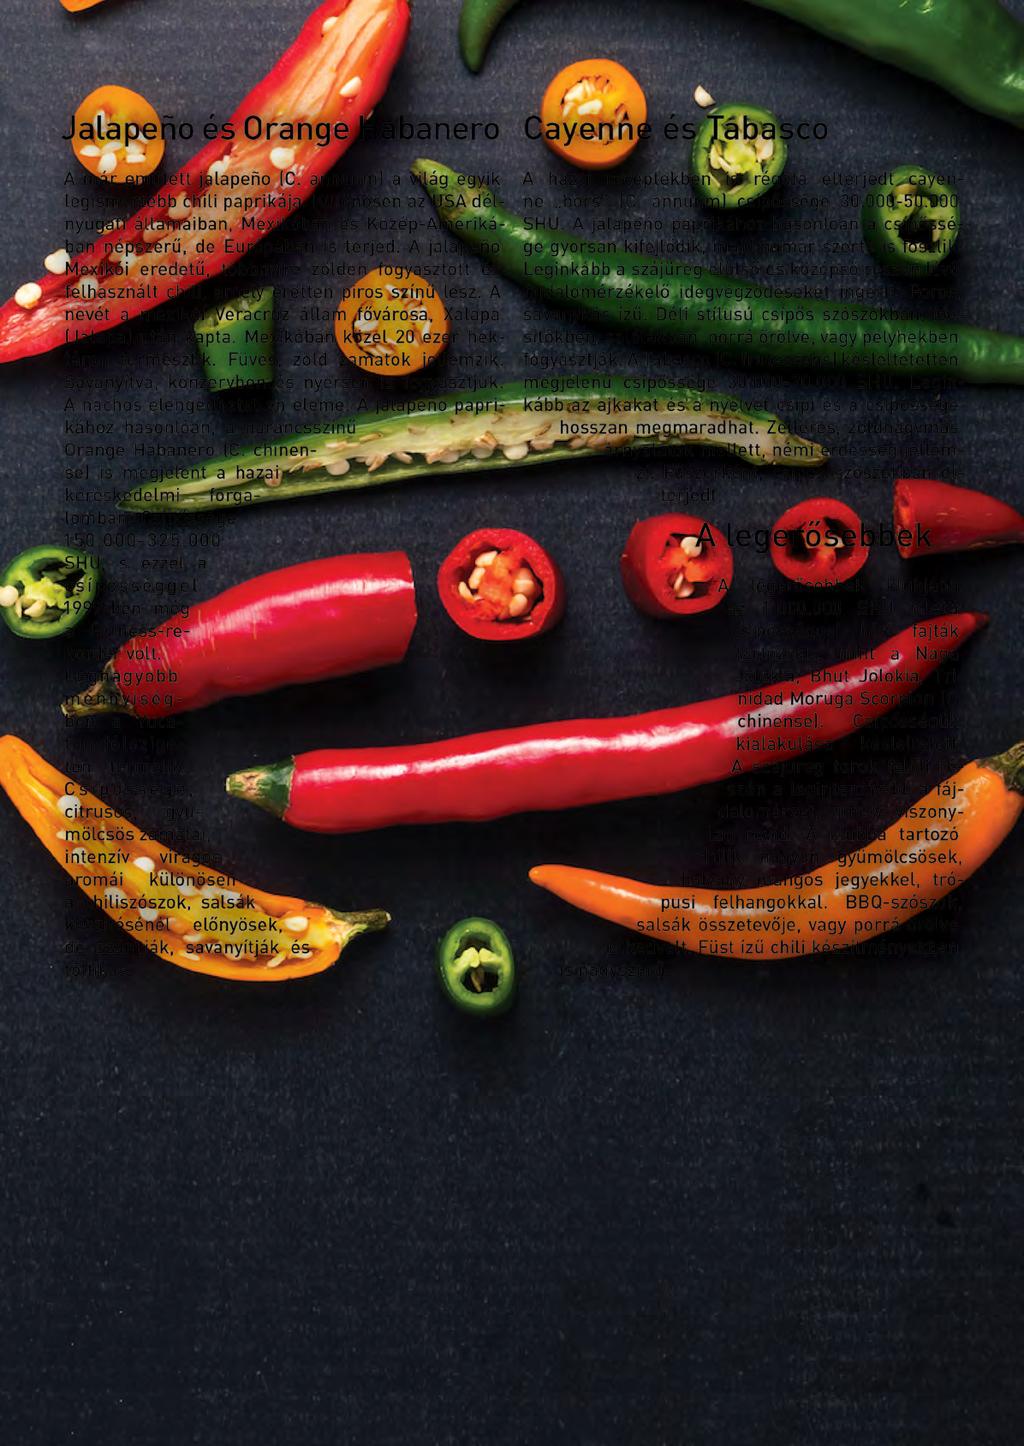 Jalapeño és Orange Habanero Cayenne és Tabasco A már említett jalapeño (C. annuum) a világ egyik legismertebb chili paprikája.